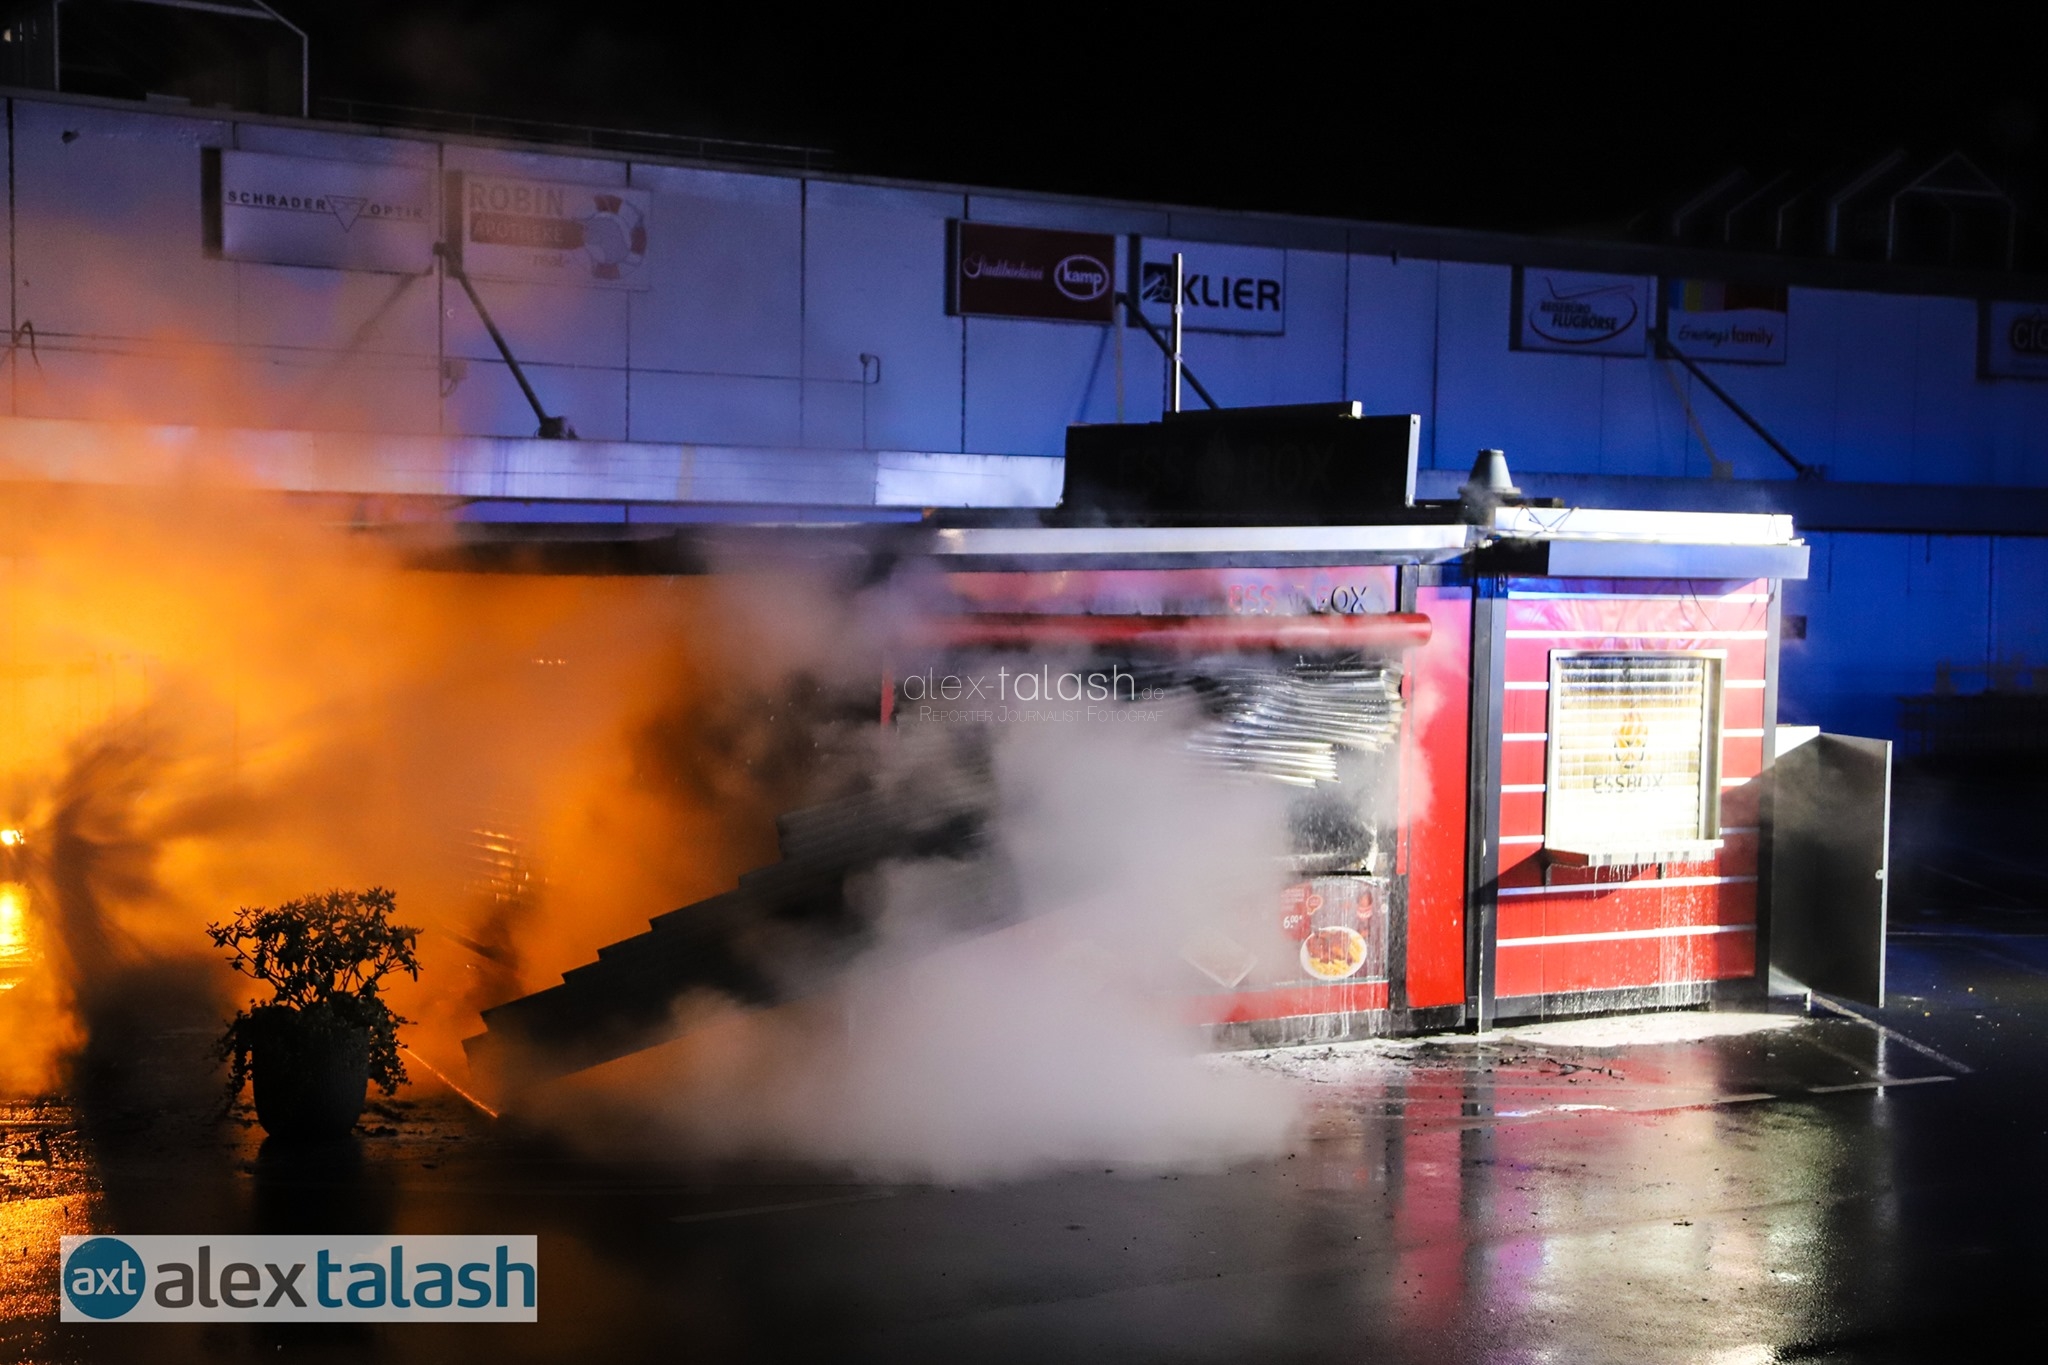 Brandstiftung: Imbissbude vor Real-Markt ausgebrannt